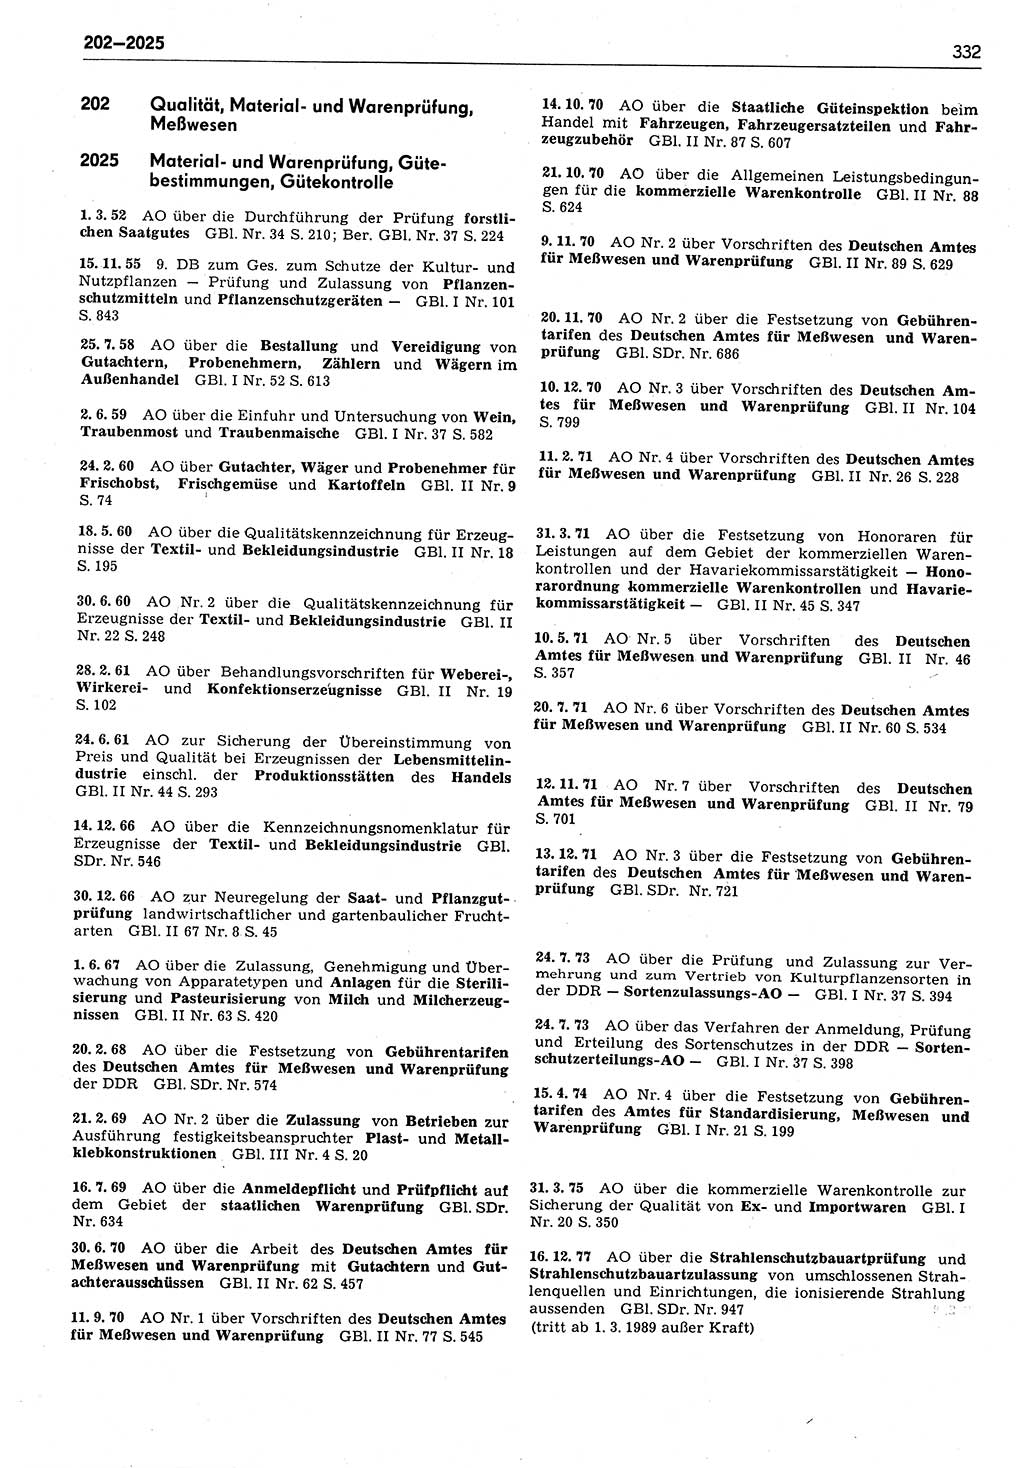 Das geltende Recht der Deutschen Demokratischen Republik (DDR) 1949-1988, Seite 332 (Gelt. R. DDR 1949-1988, S. 332)